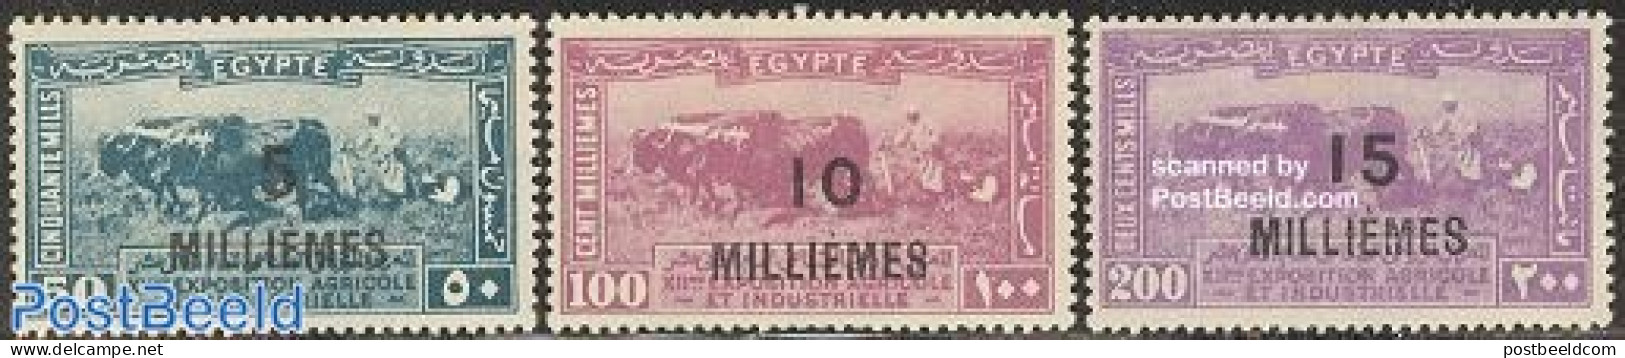 Egypt (Kingdom) 1926 Overprints 3v, Unused (hinged), Nature - Cattle - Unused Stamps